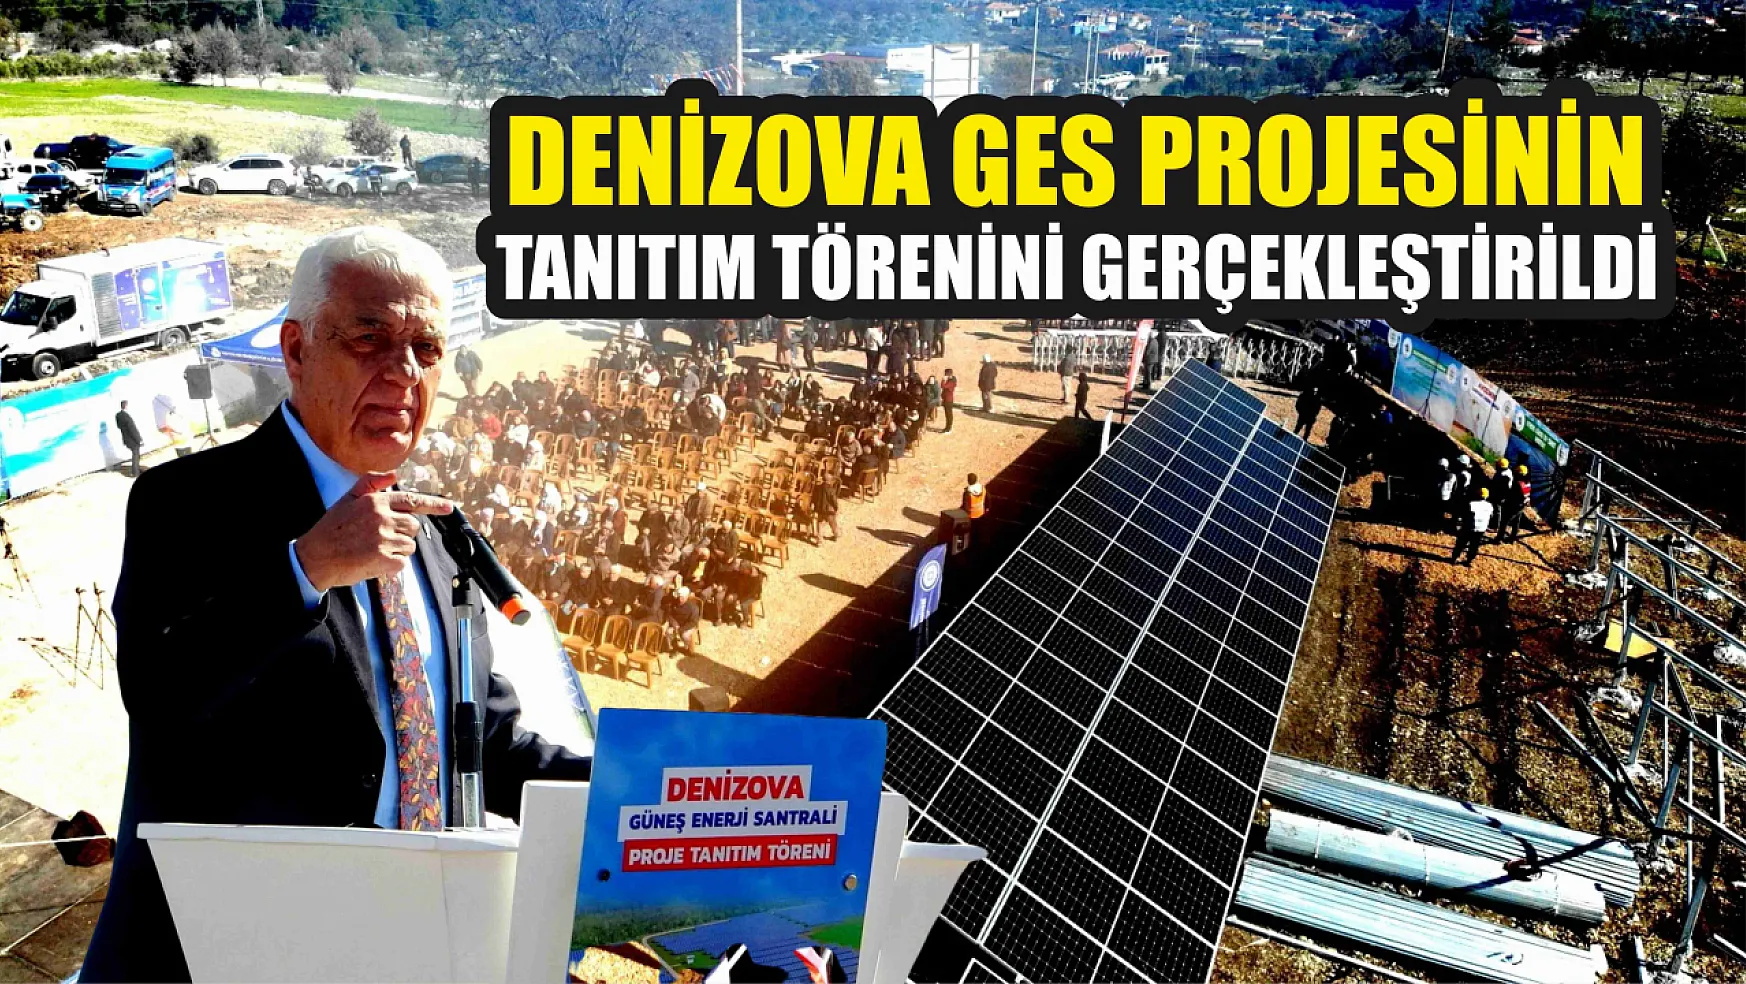 Denizova GES projesinin tanıtım törenini gerçekleştirildi